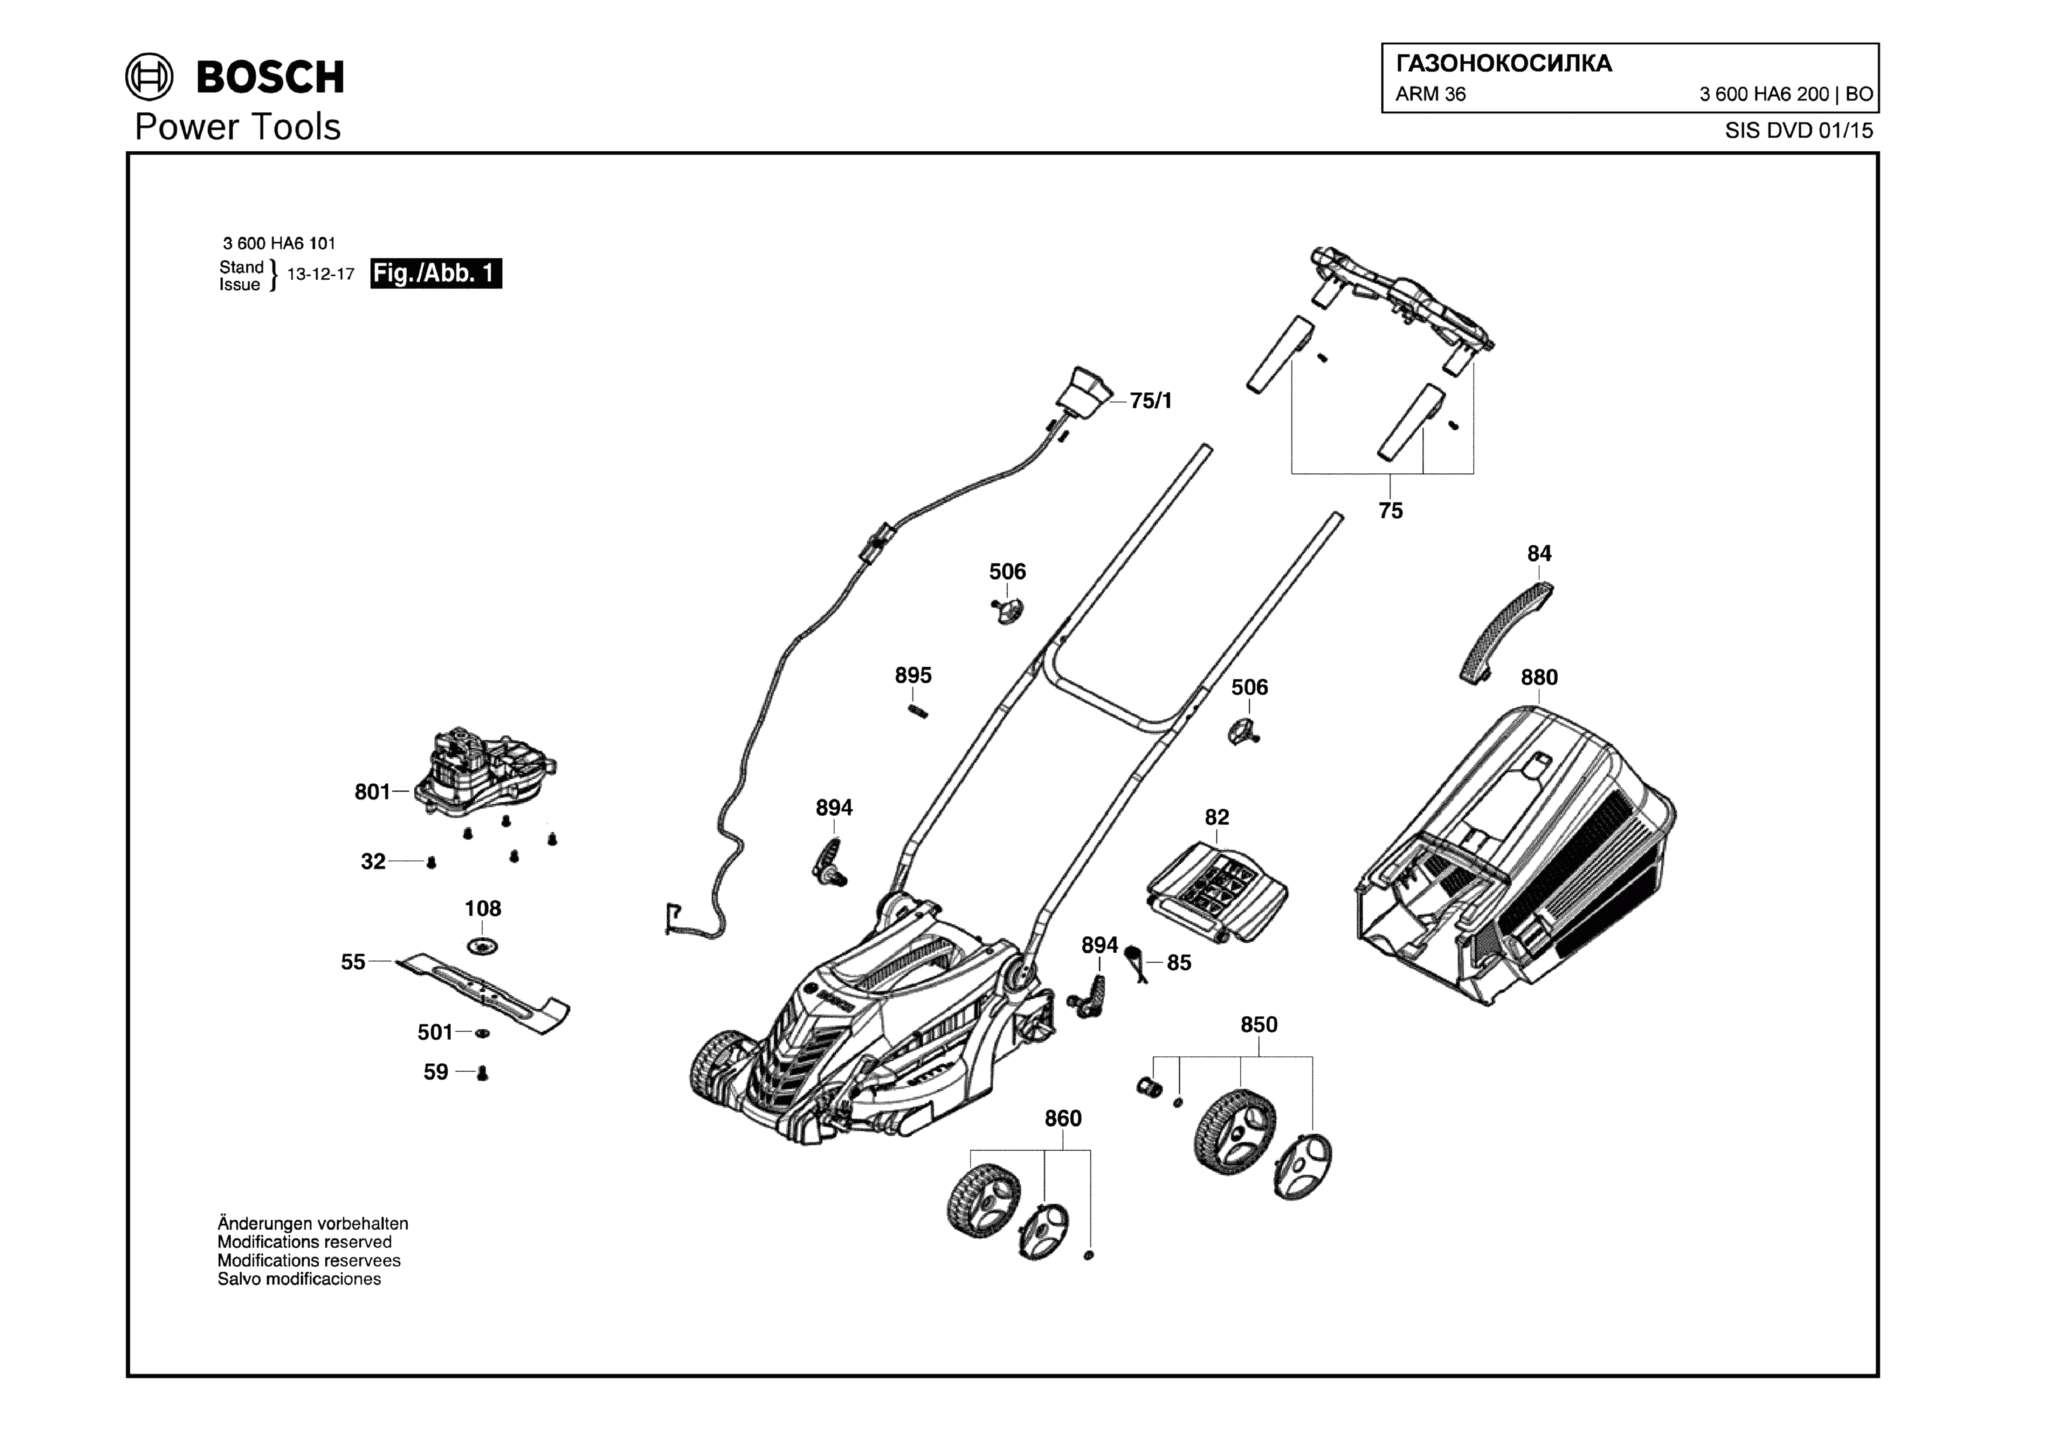 Запчасти, схема и деталировка Bosch ARM 36 (ТИП 3600HA6200)